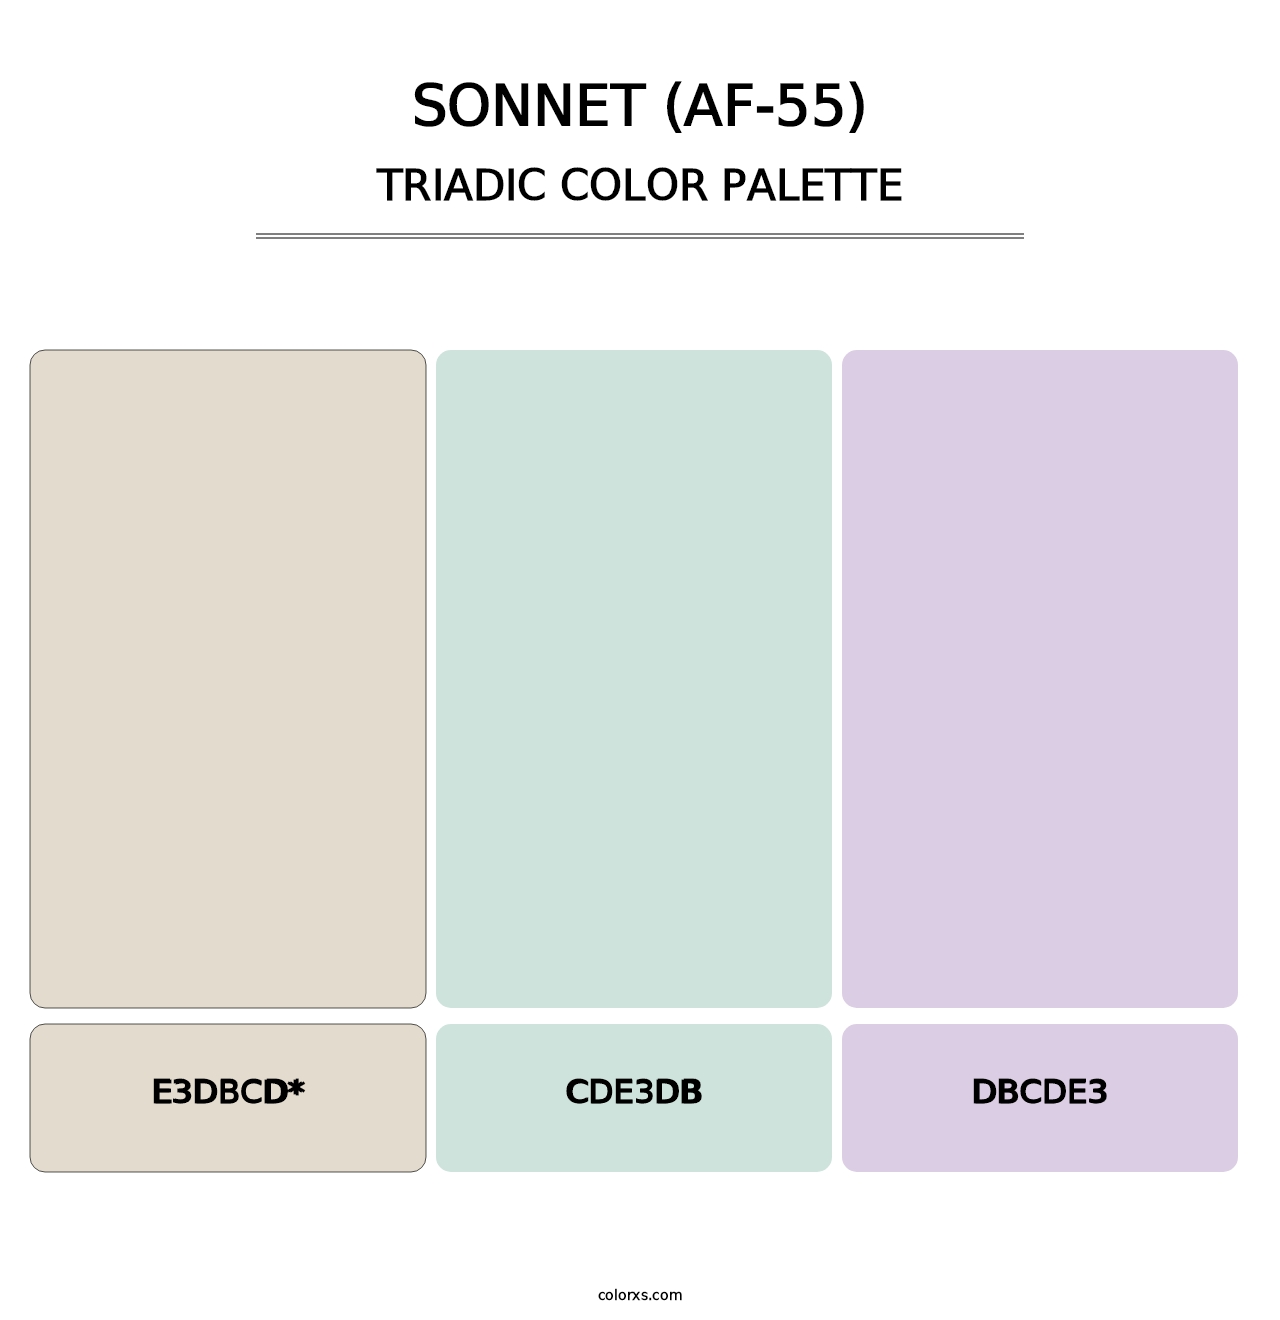 Sonnet (AF-55) - Triadic Color Palette